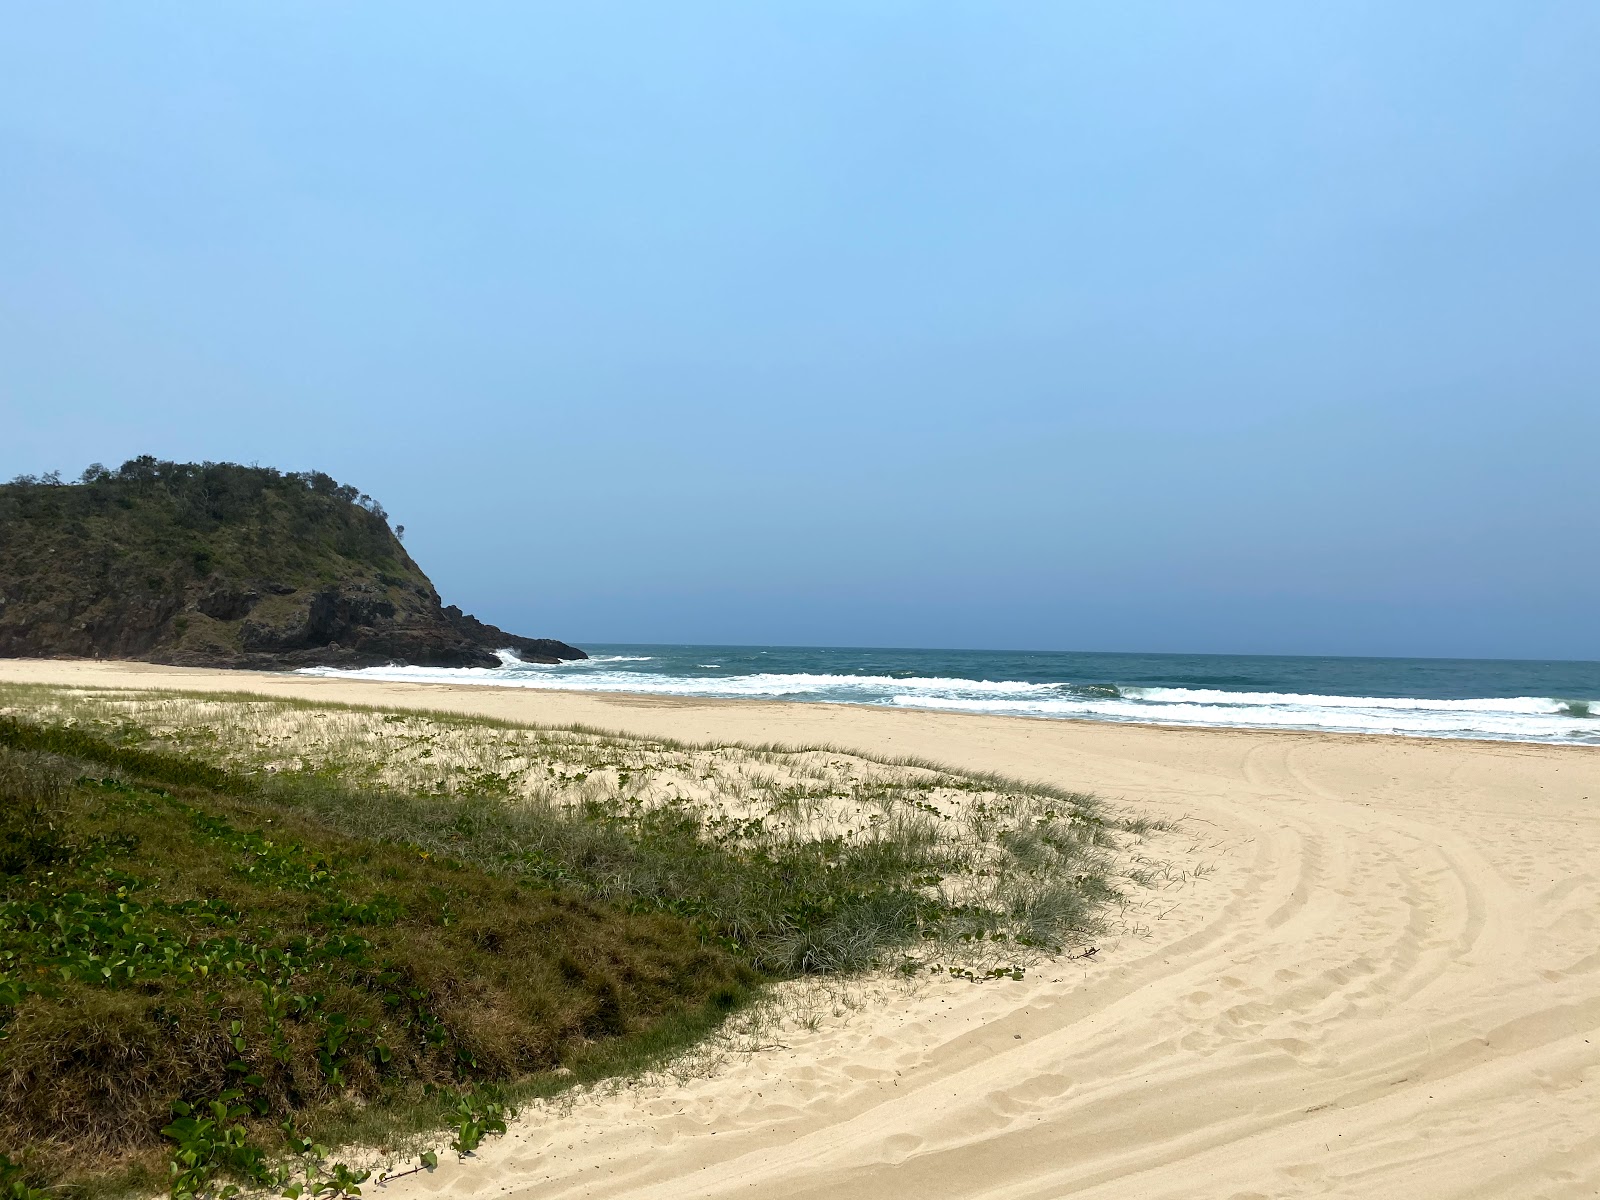 Foto de Off Leash Dog Beach com areia fina e brilhante superfície